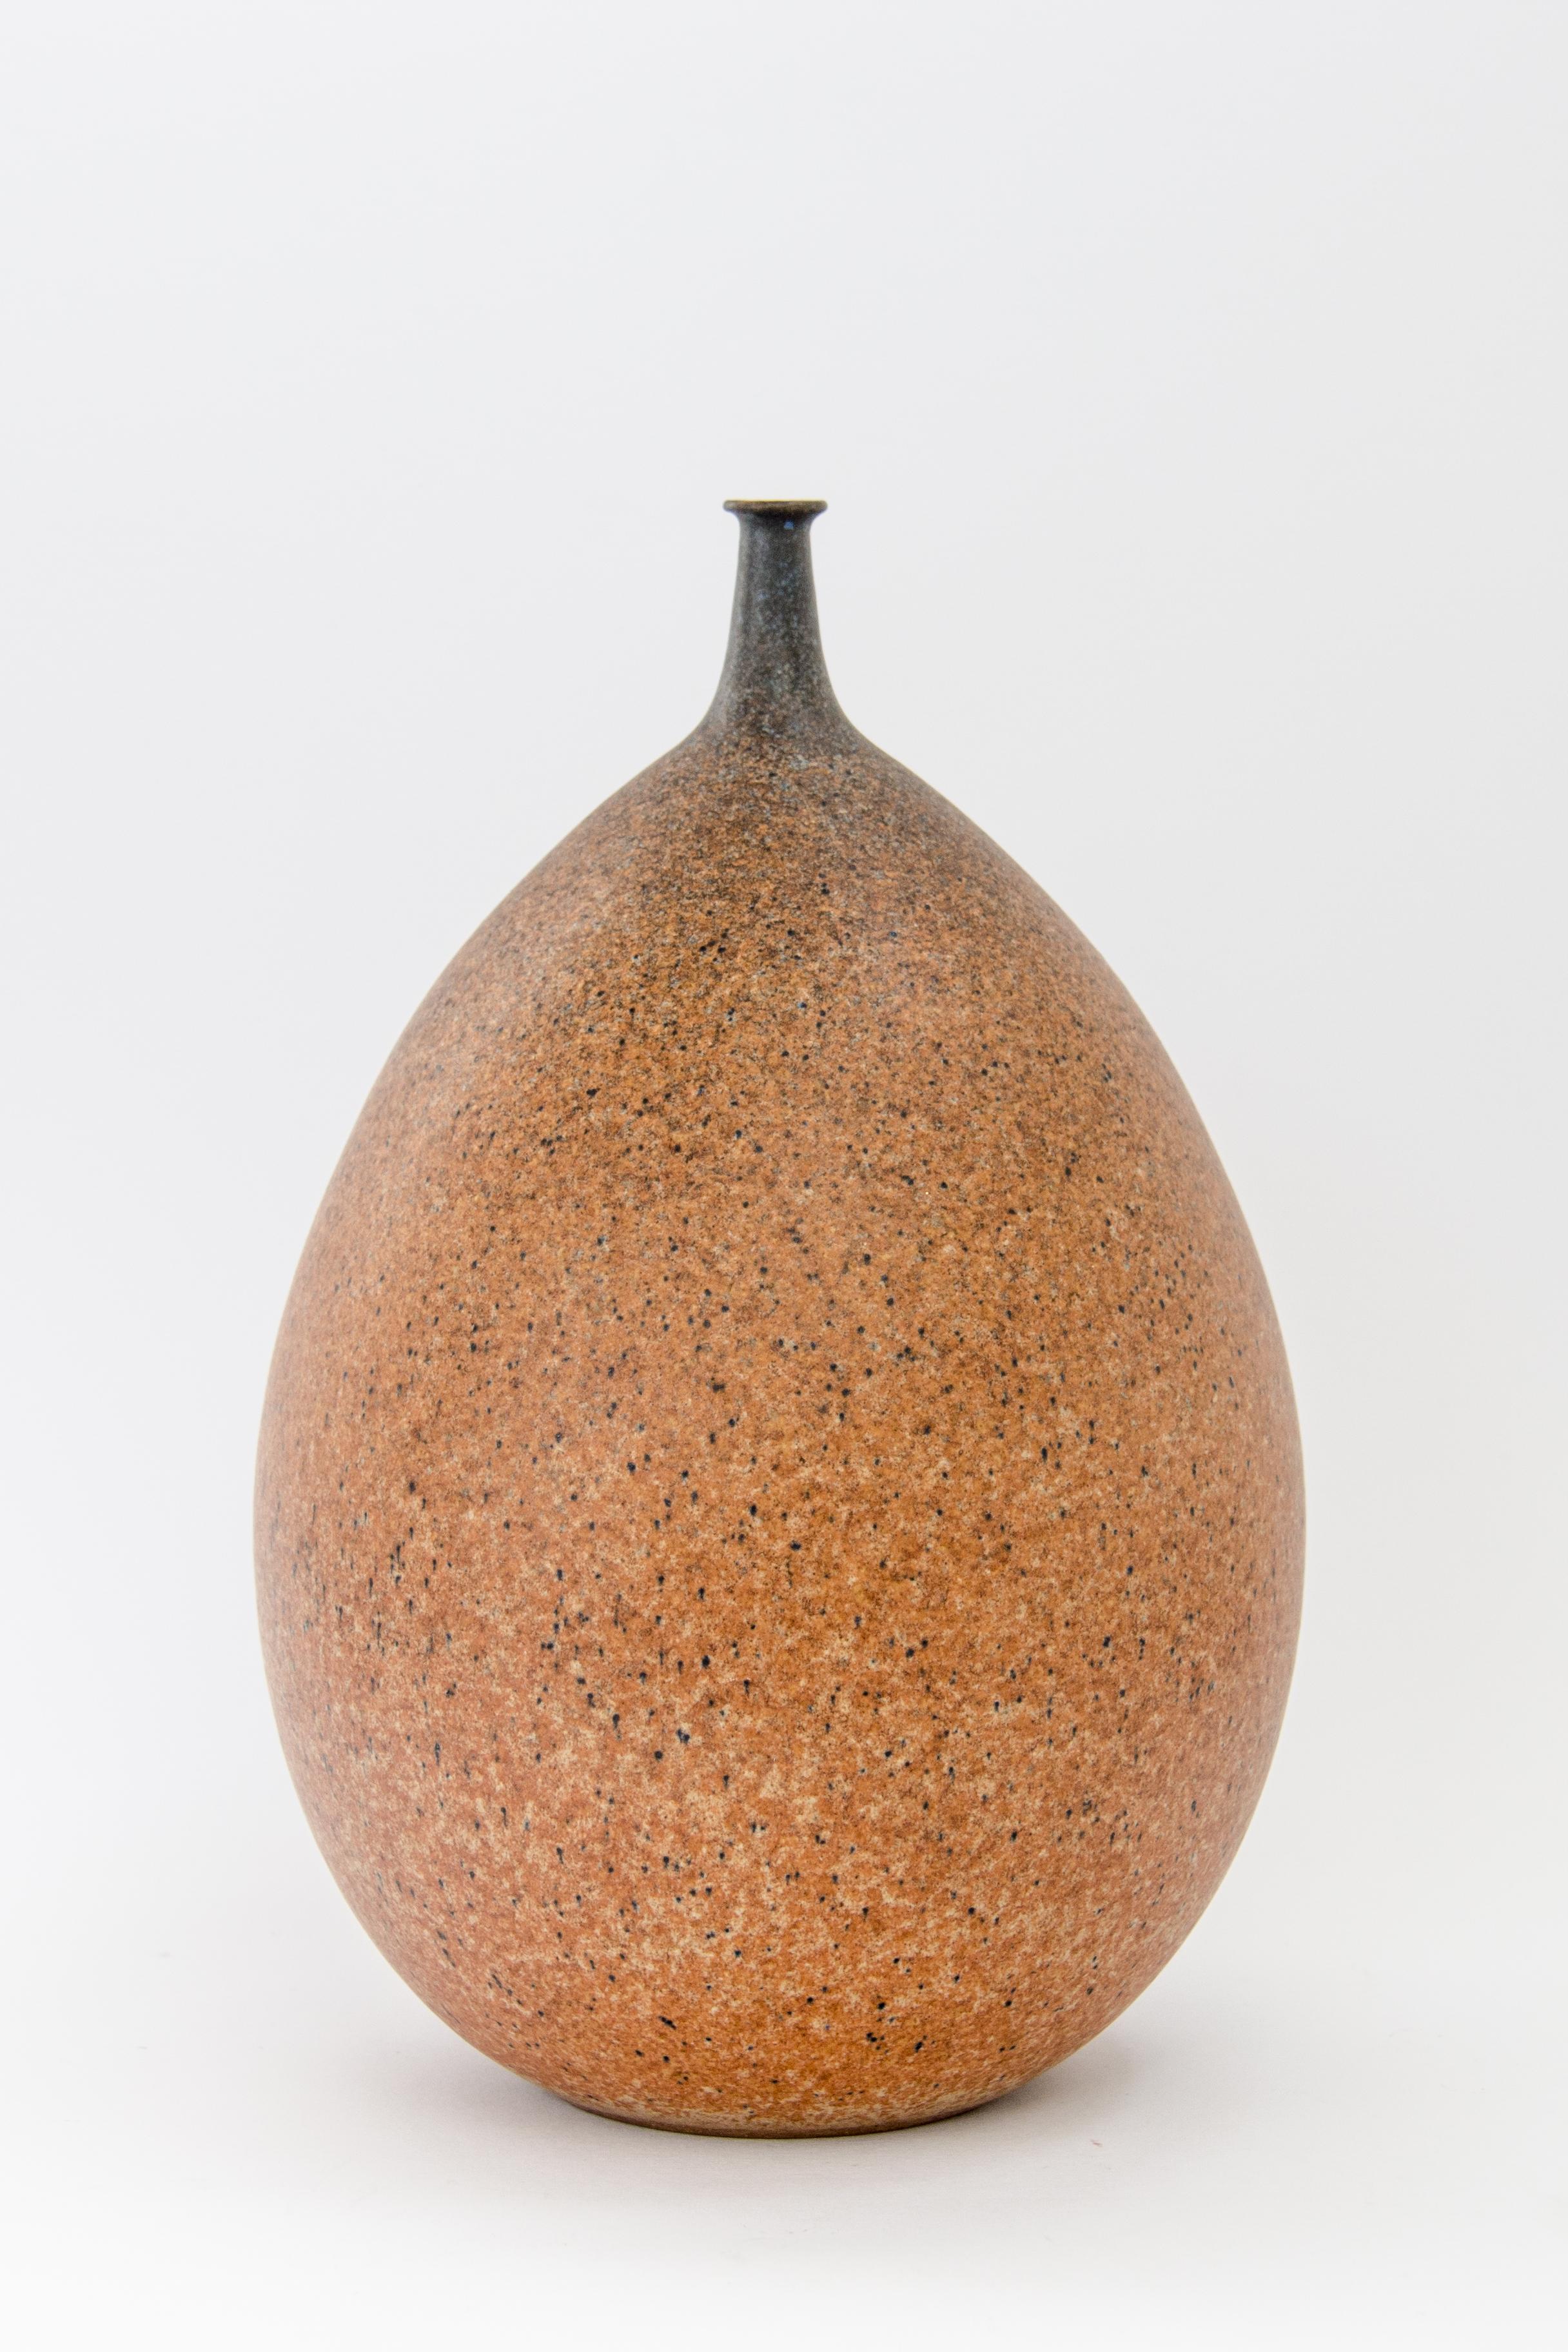 Studio ceramic vase by Joan Carrillo.